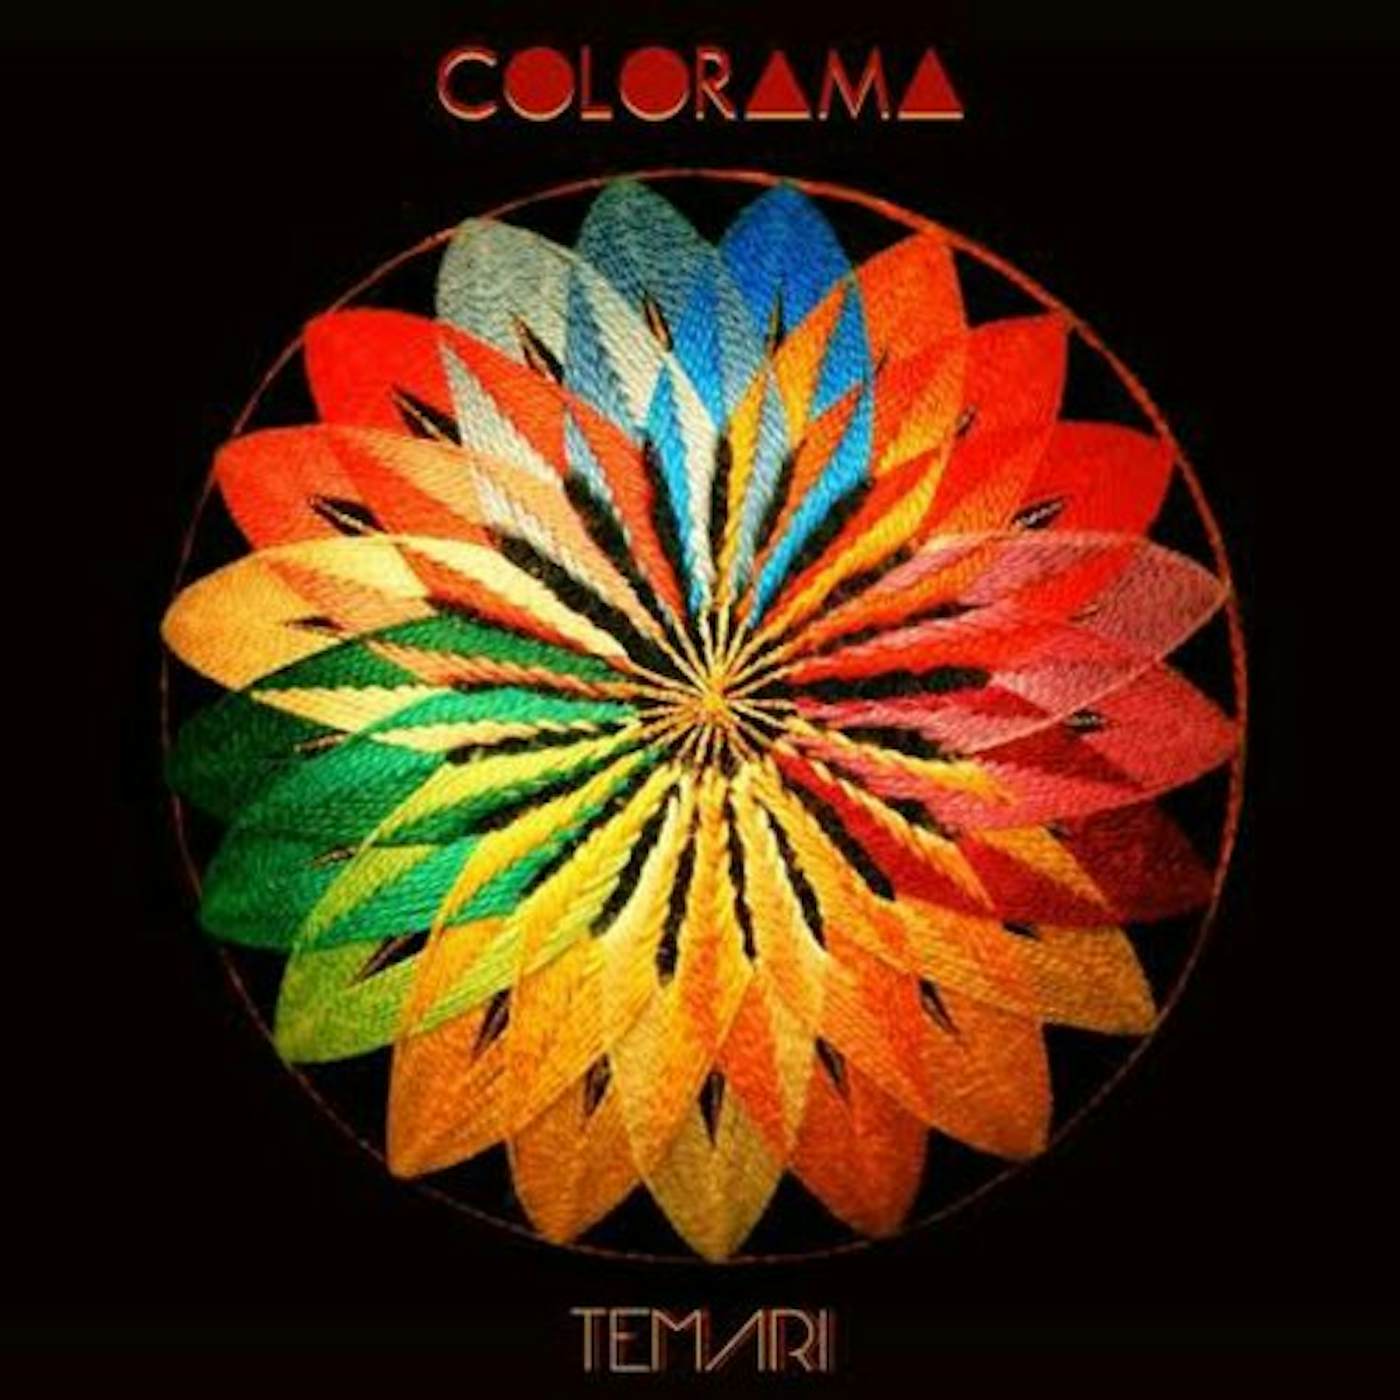 Colorama TEMARI CD - UK Release